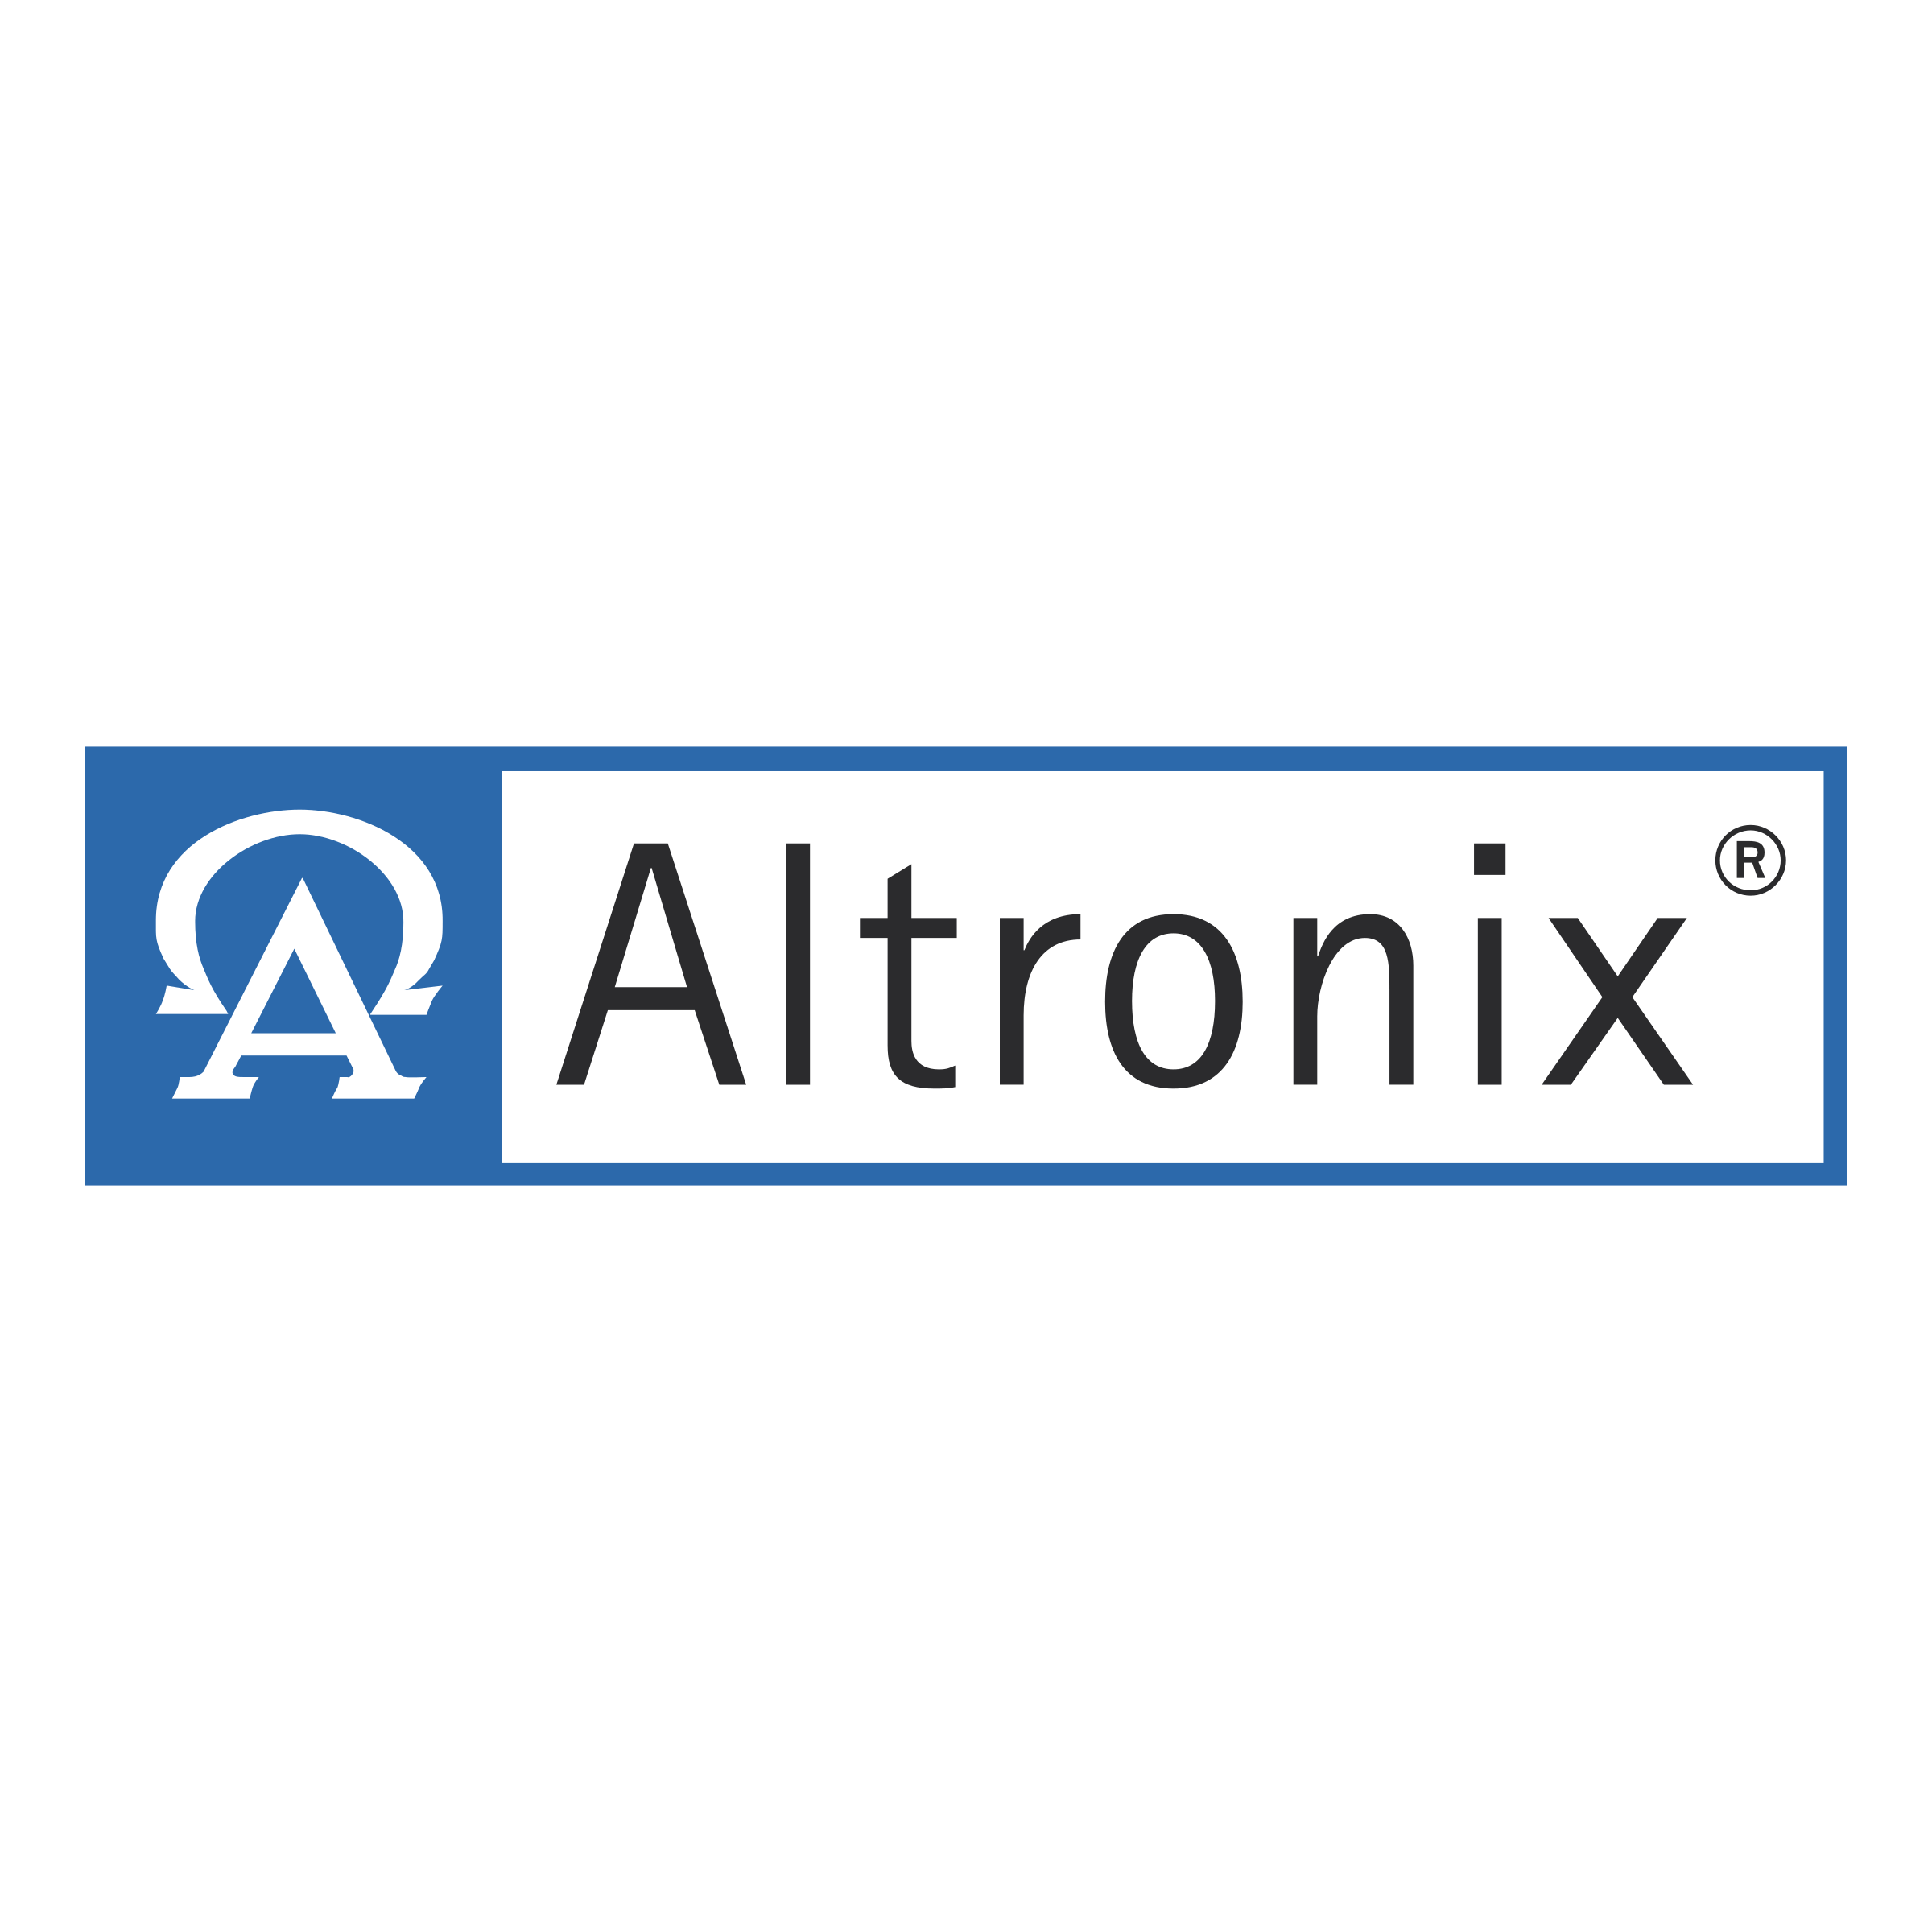 Altronix Logo - Altronix Logo PNG Transparent & SVG Vector - Freebie Supply